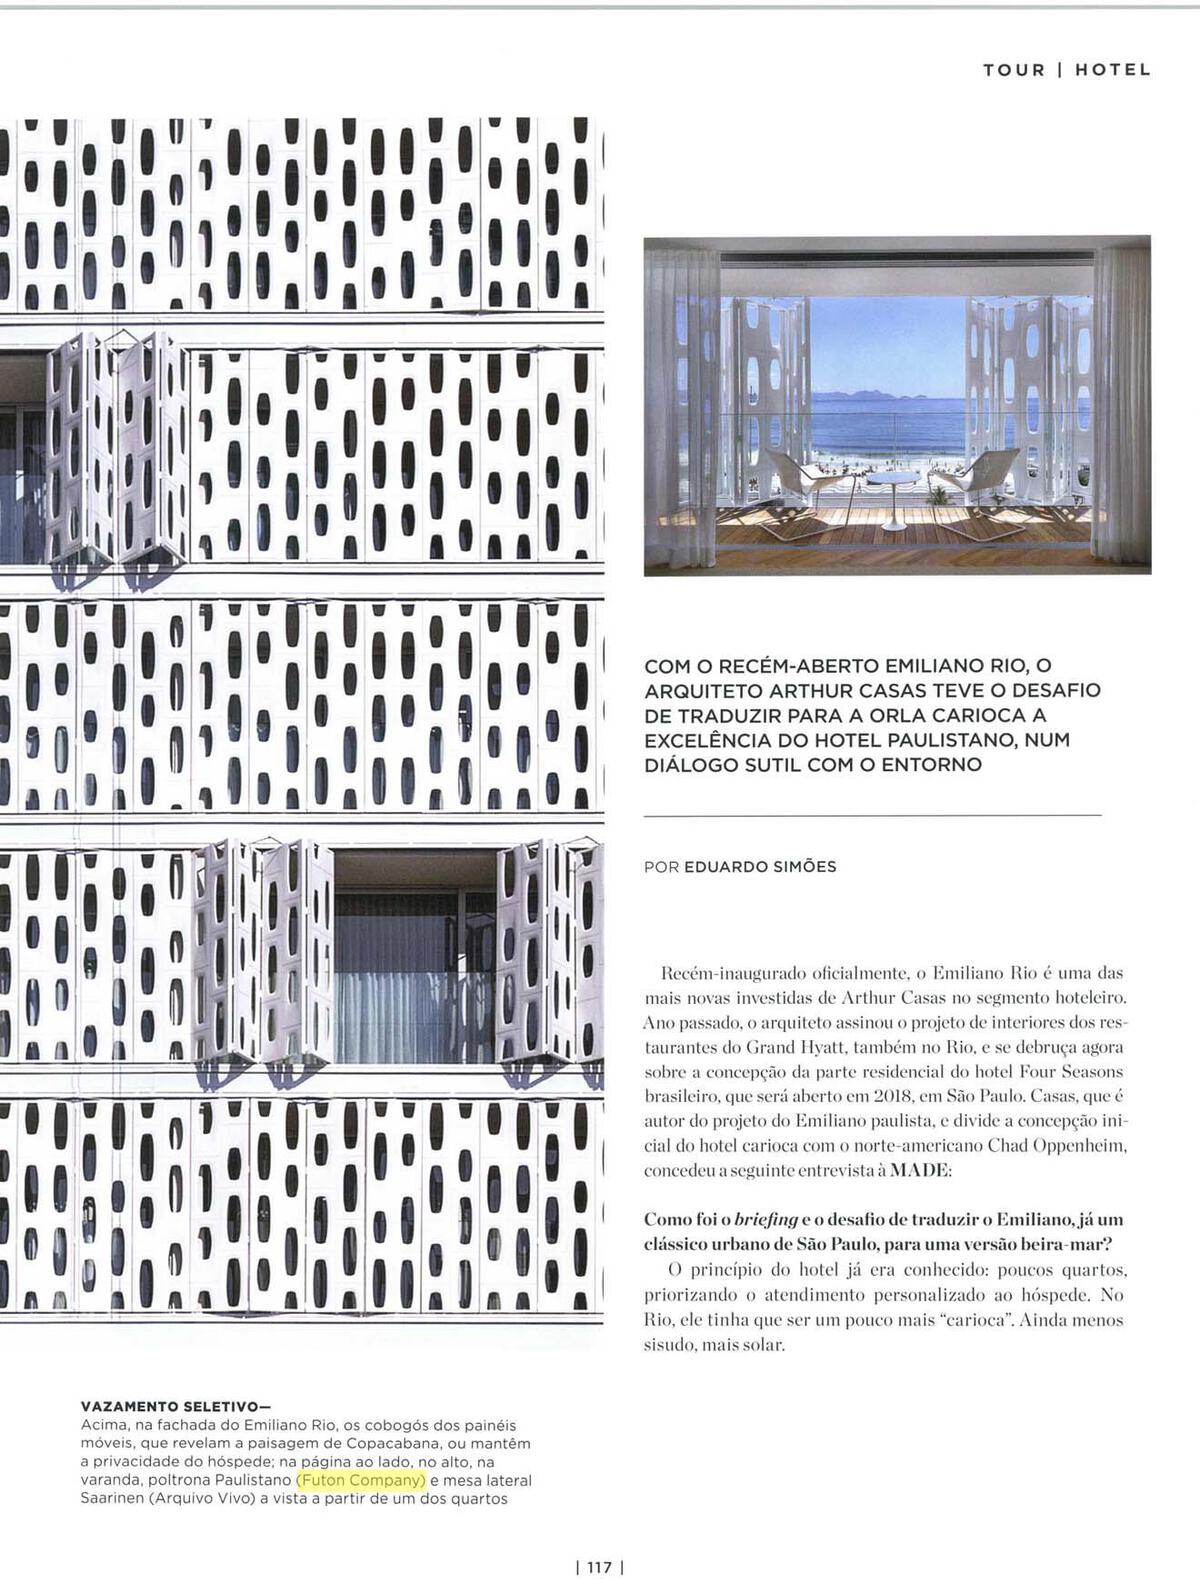 Poltronas Paulistano brancas (com capa de Sunbrella®), nas suites do hotel Emiliano no Rio (projeto Arthur Casa